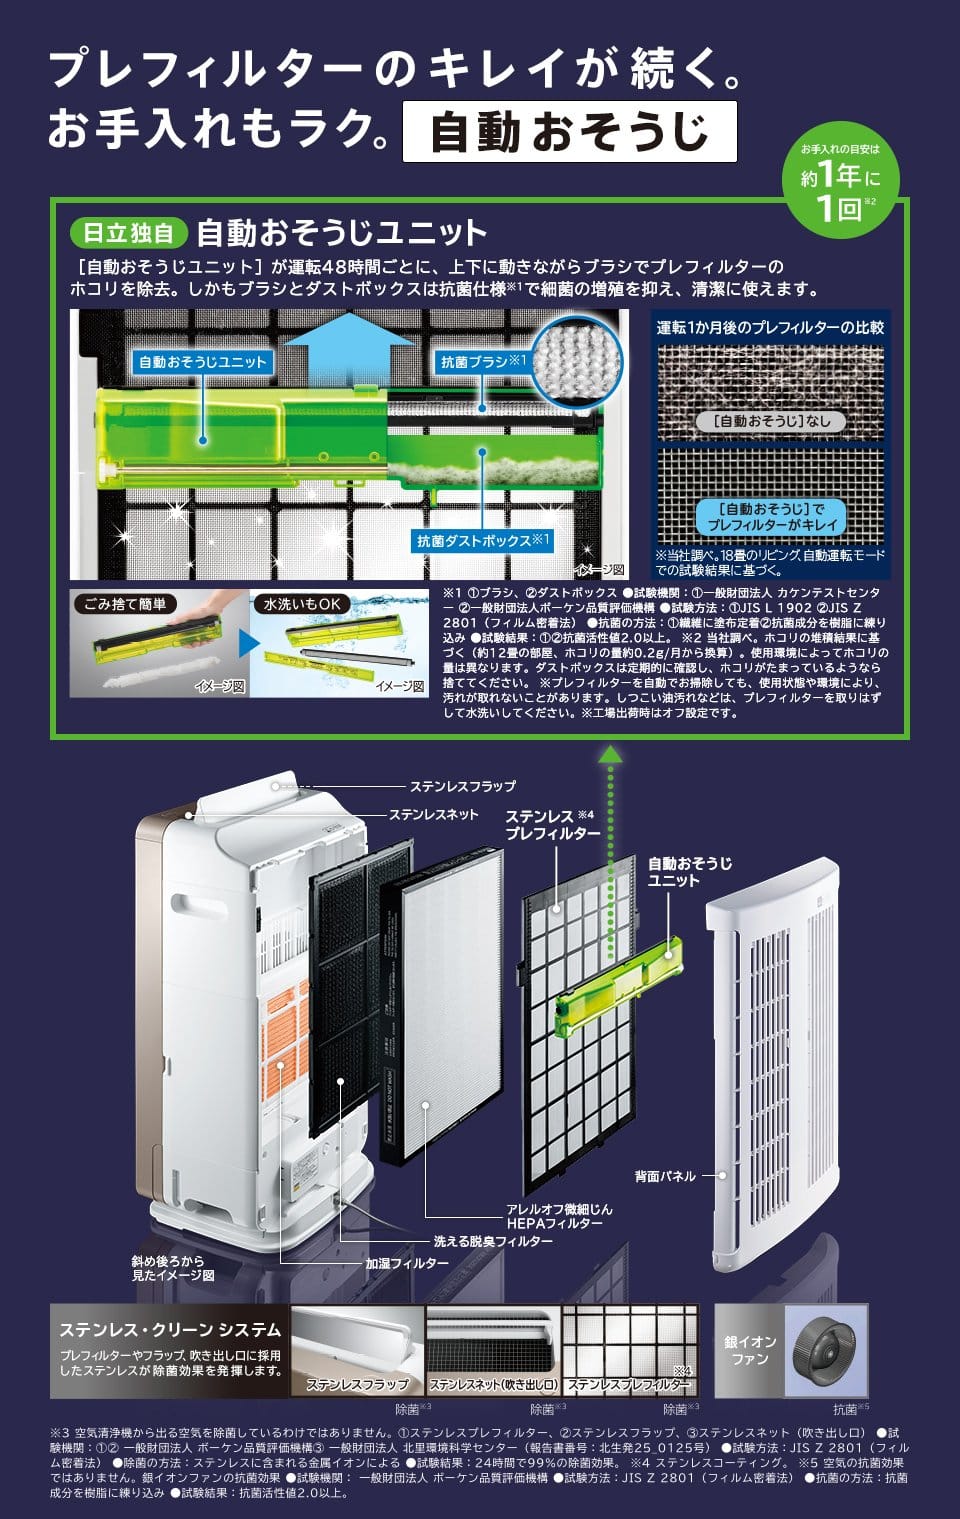 Máy Lọc Không Khí Hitachi Ep-Nvg90-W Nội Địa Nhật